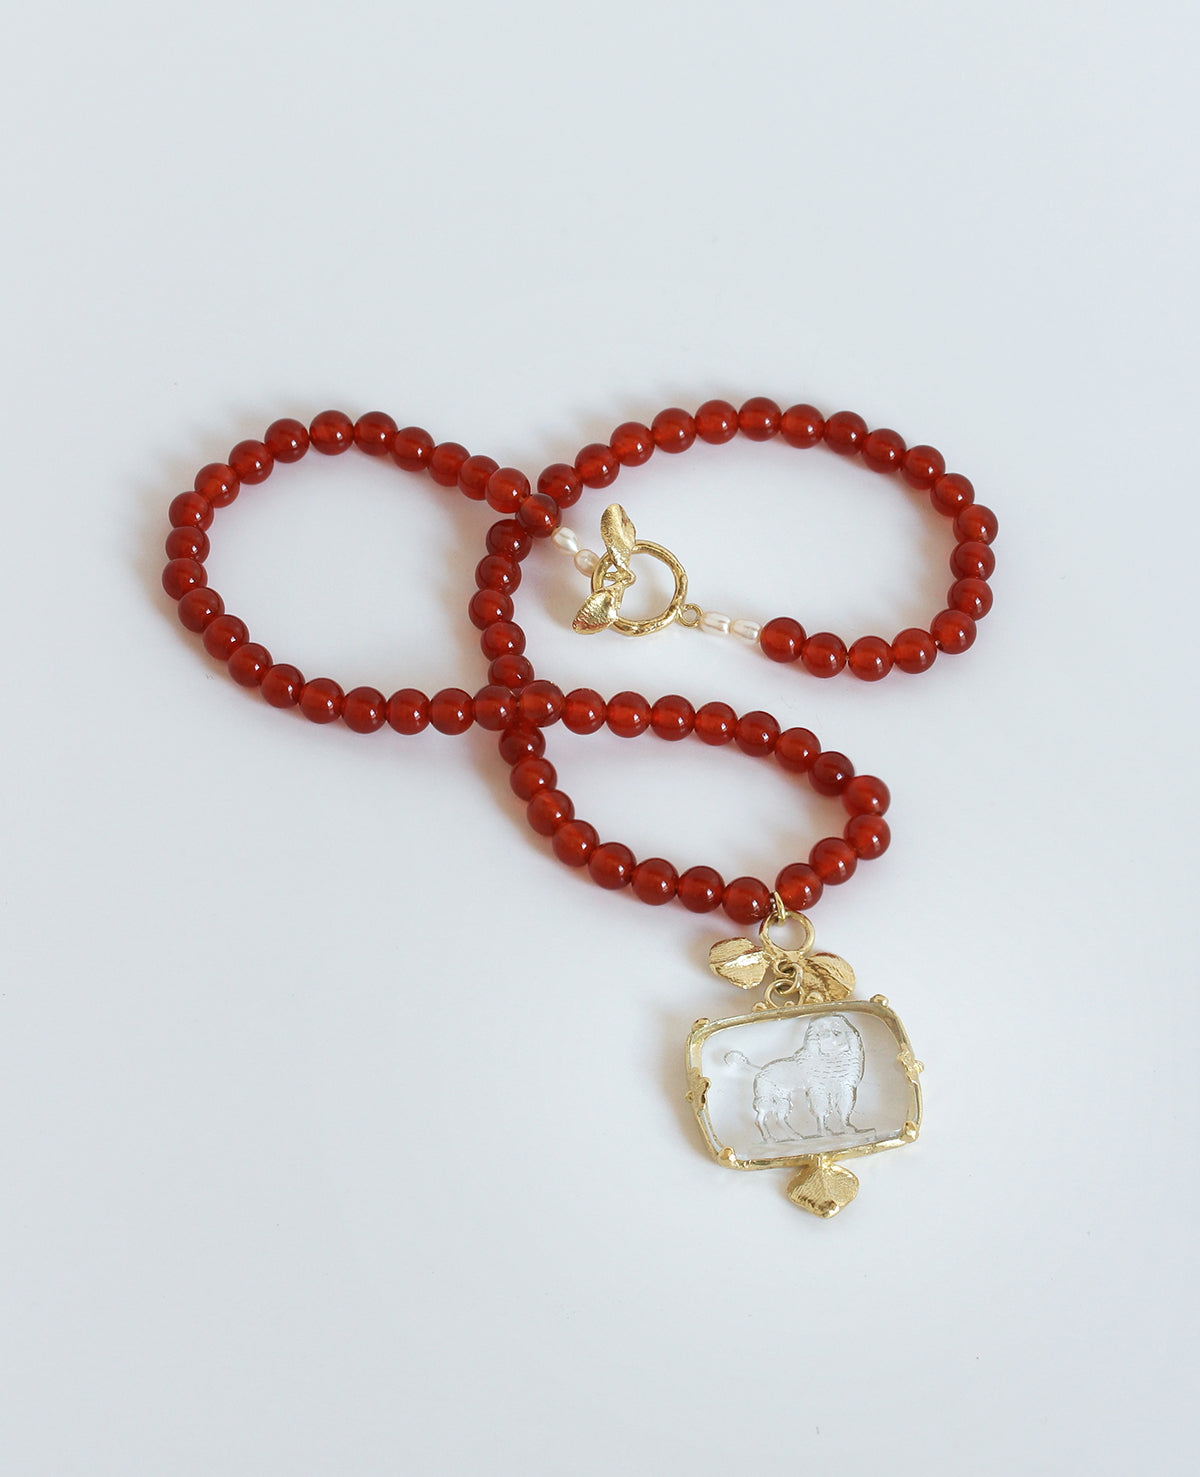 POODLE INTAGLIO IN RED // collier en laiton - ORA-C jewelry - bijoux artisanaux de la designer indépendante montréalaise Caroline Pham